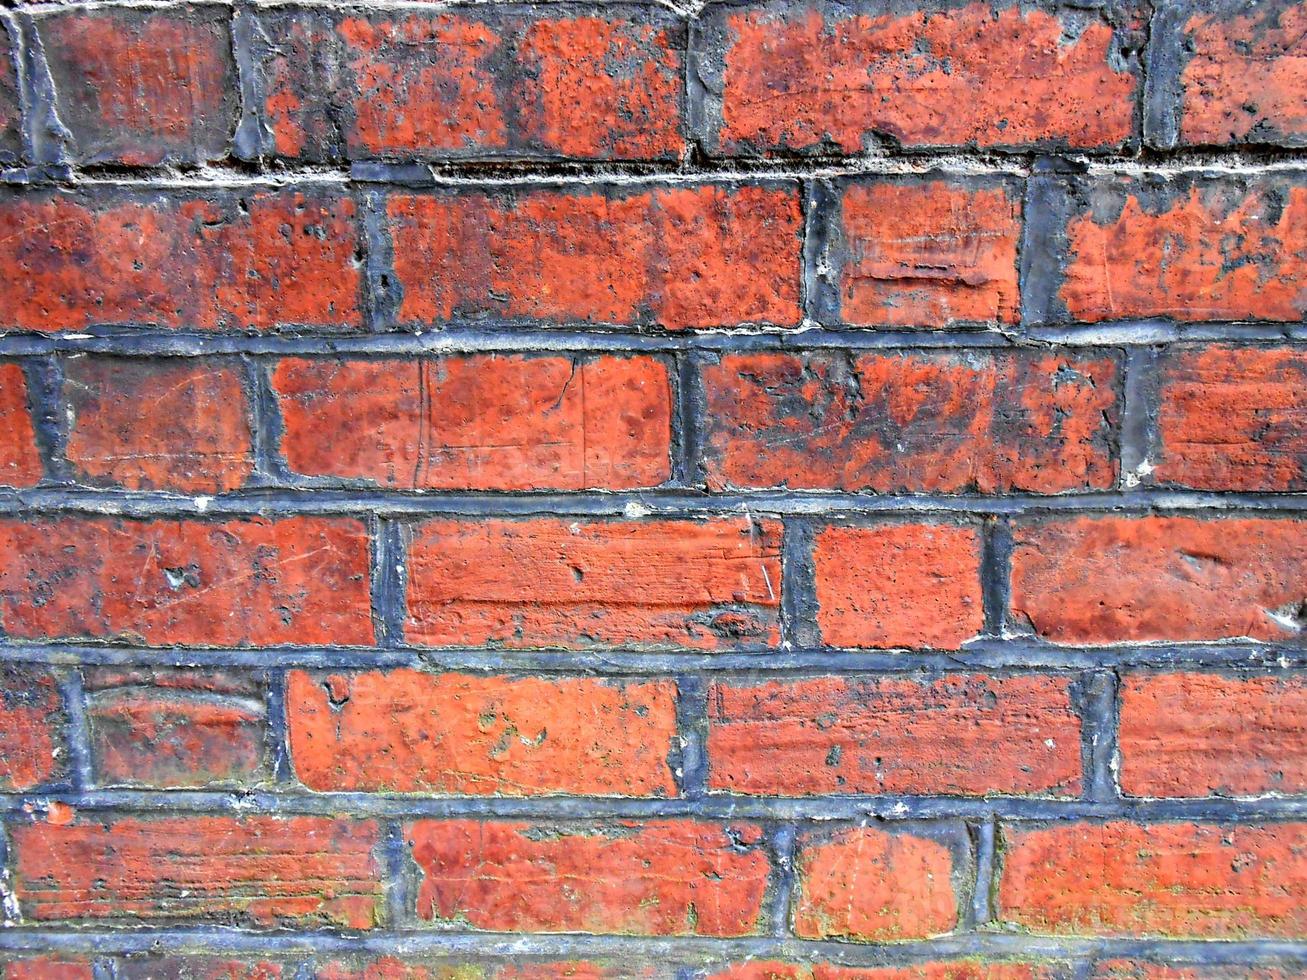 mur de briques rouges photo